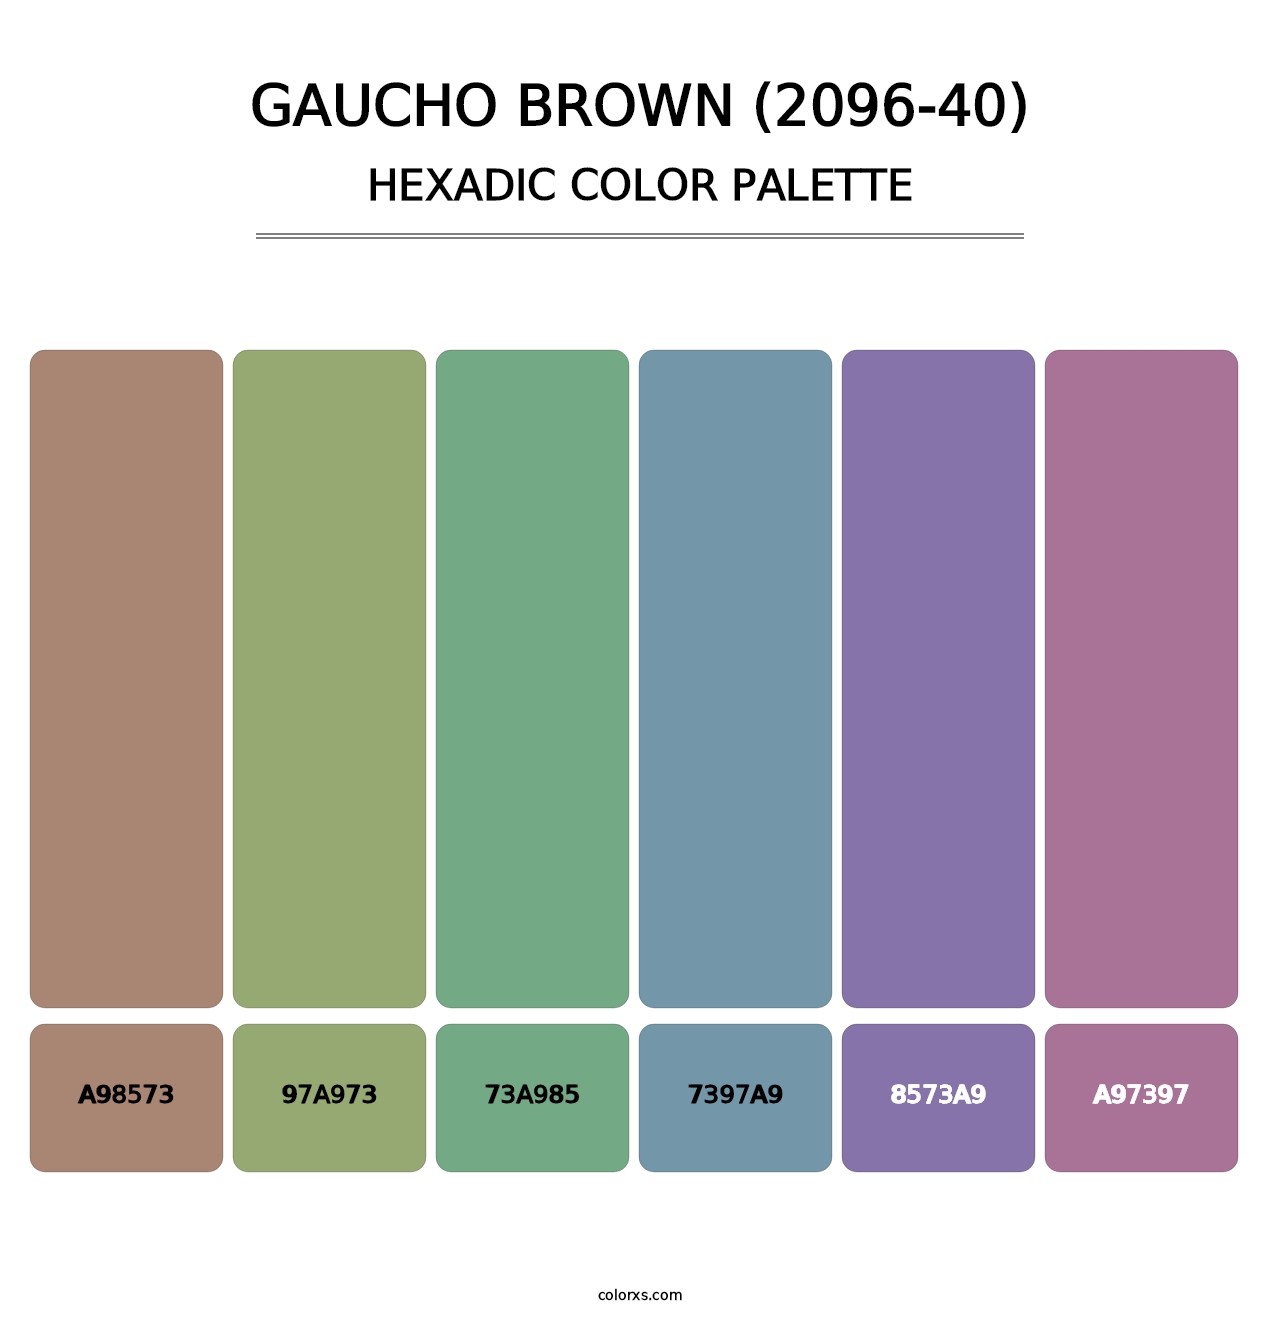 Gaucho Brown (2096-40) - Hexadic Color Palette